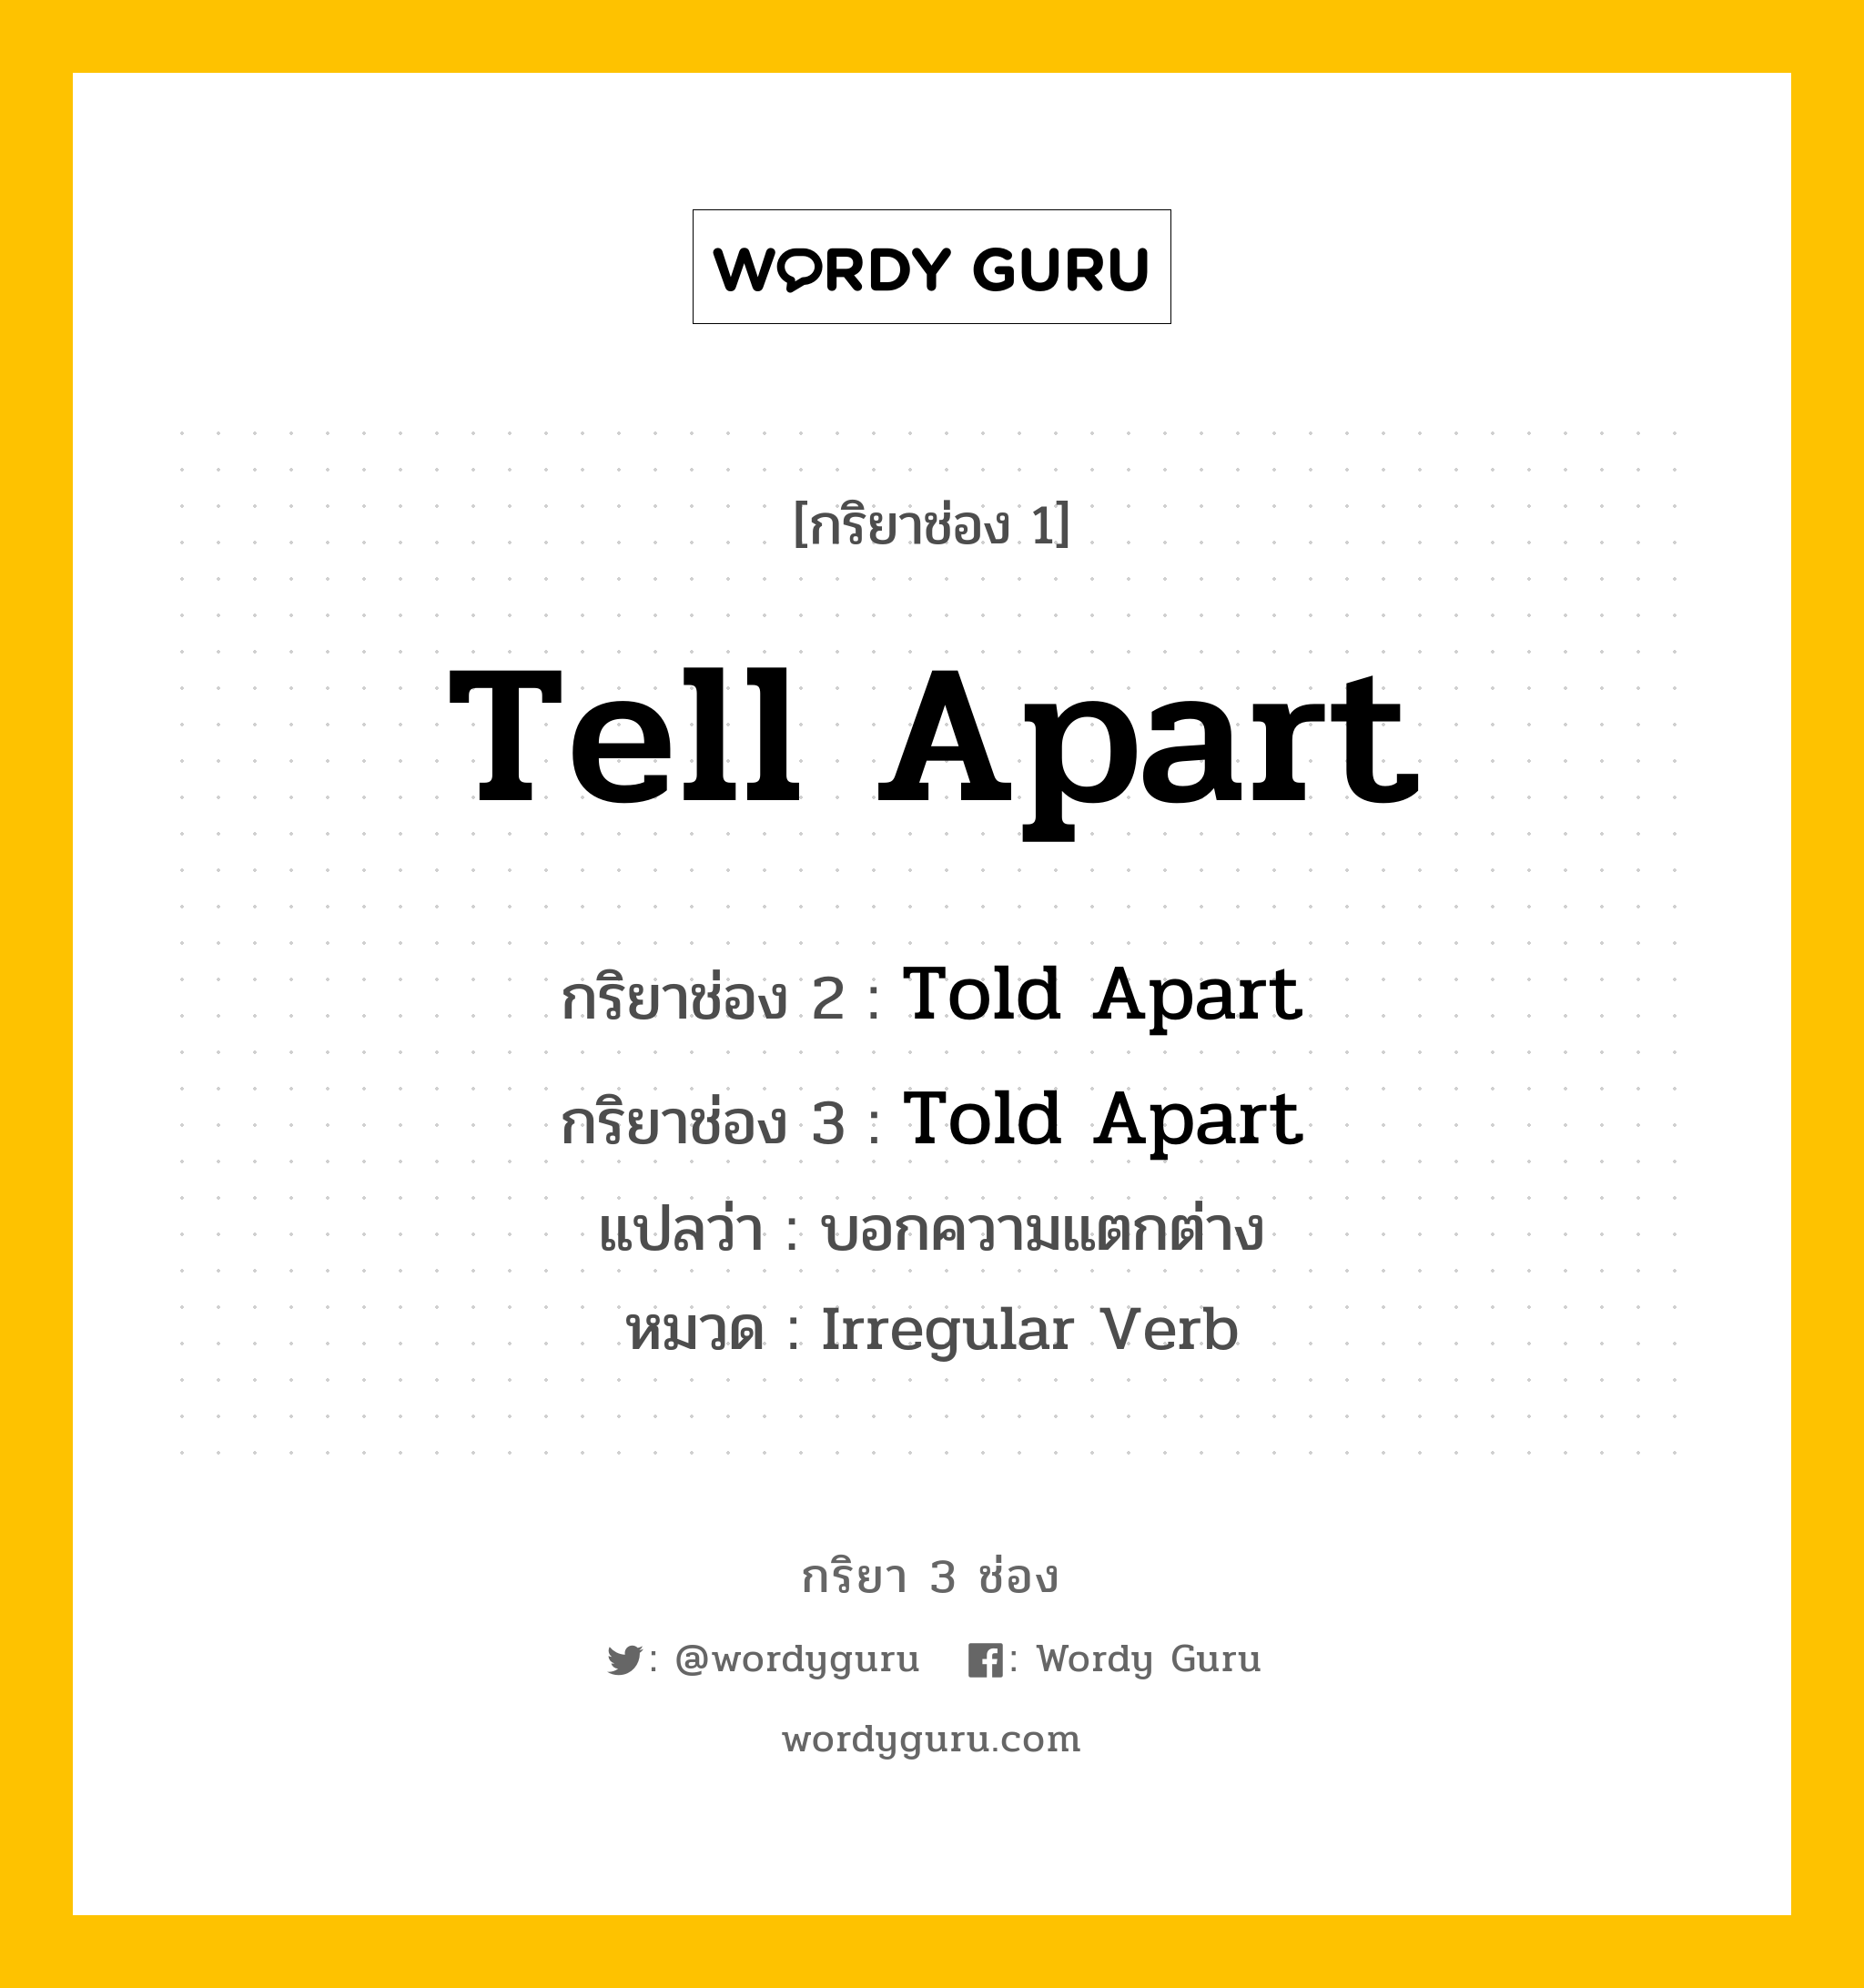 กริยา 3 ช่อง: Tell Apart ช่อง 2 Tell Apart ช่อง 3 คืออะไร, กริยาช่อง 1 Tell Apart กริยาช่อง 2 Told Apart กริยาช่อง 3 Told Apart แปลว่า บอกความแตกต่าง หมวด Irregular Verb หมวด Irregular Verb